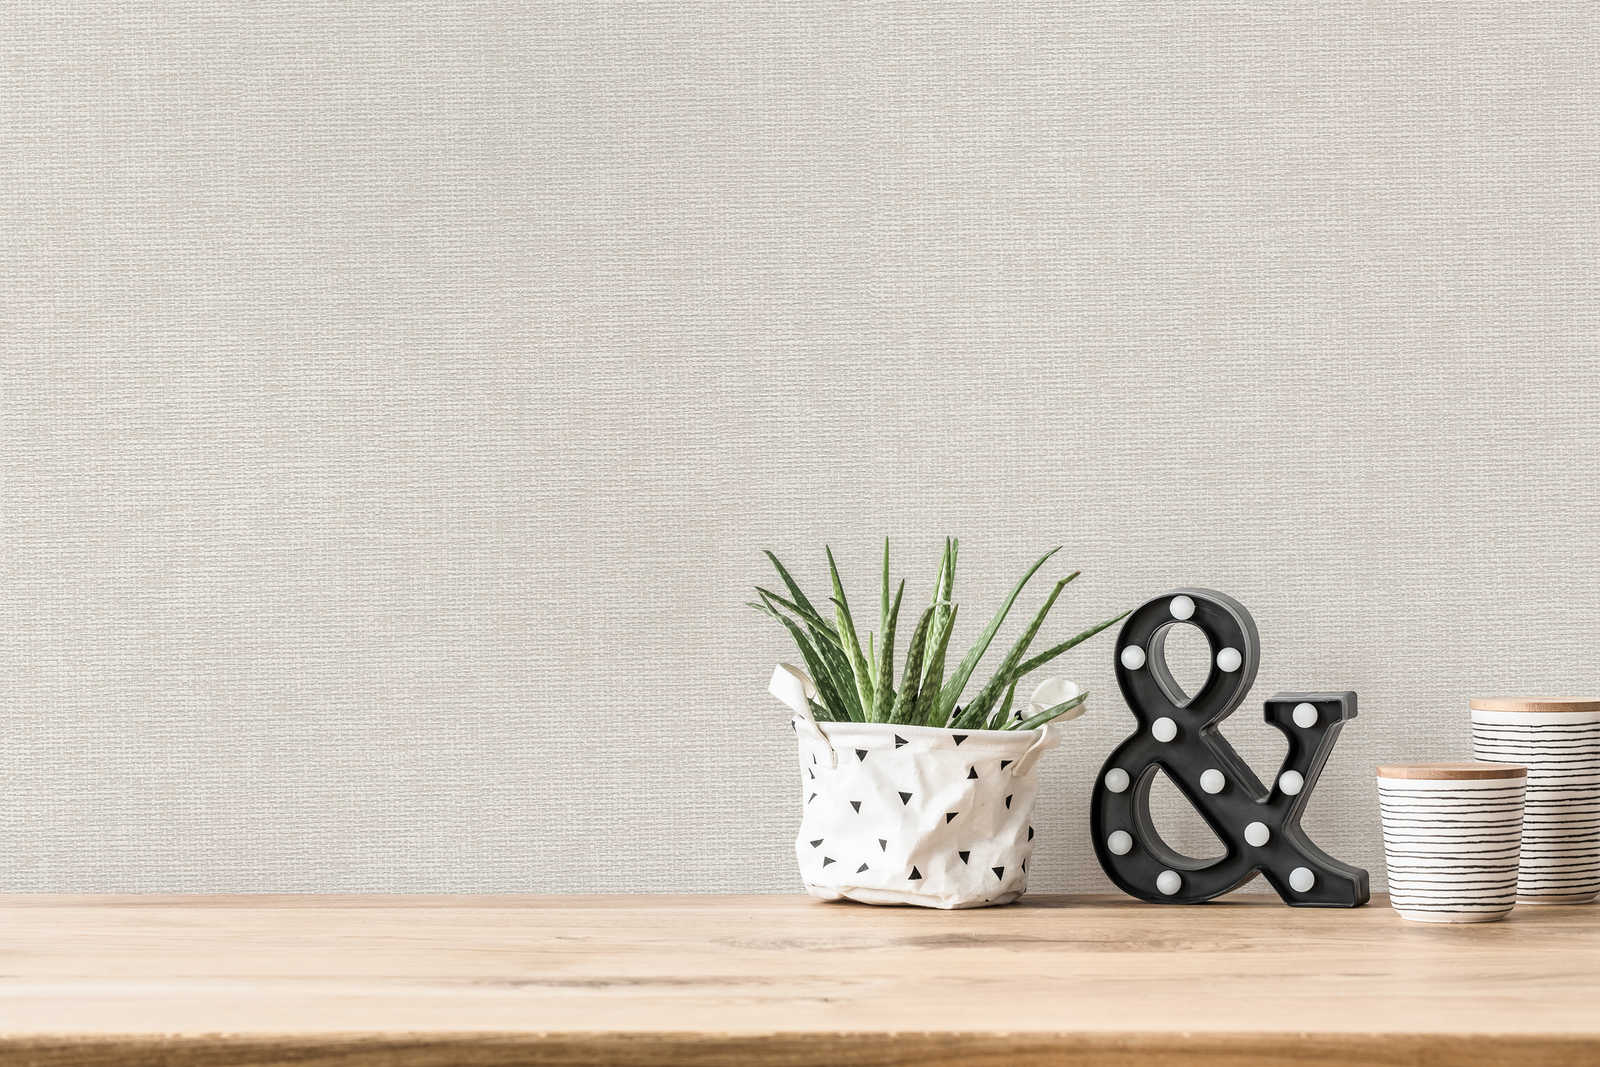             Papel pintado de diseño escandinavo con aspecto de lino - gris
        